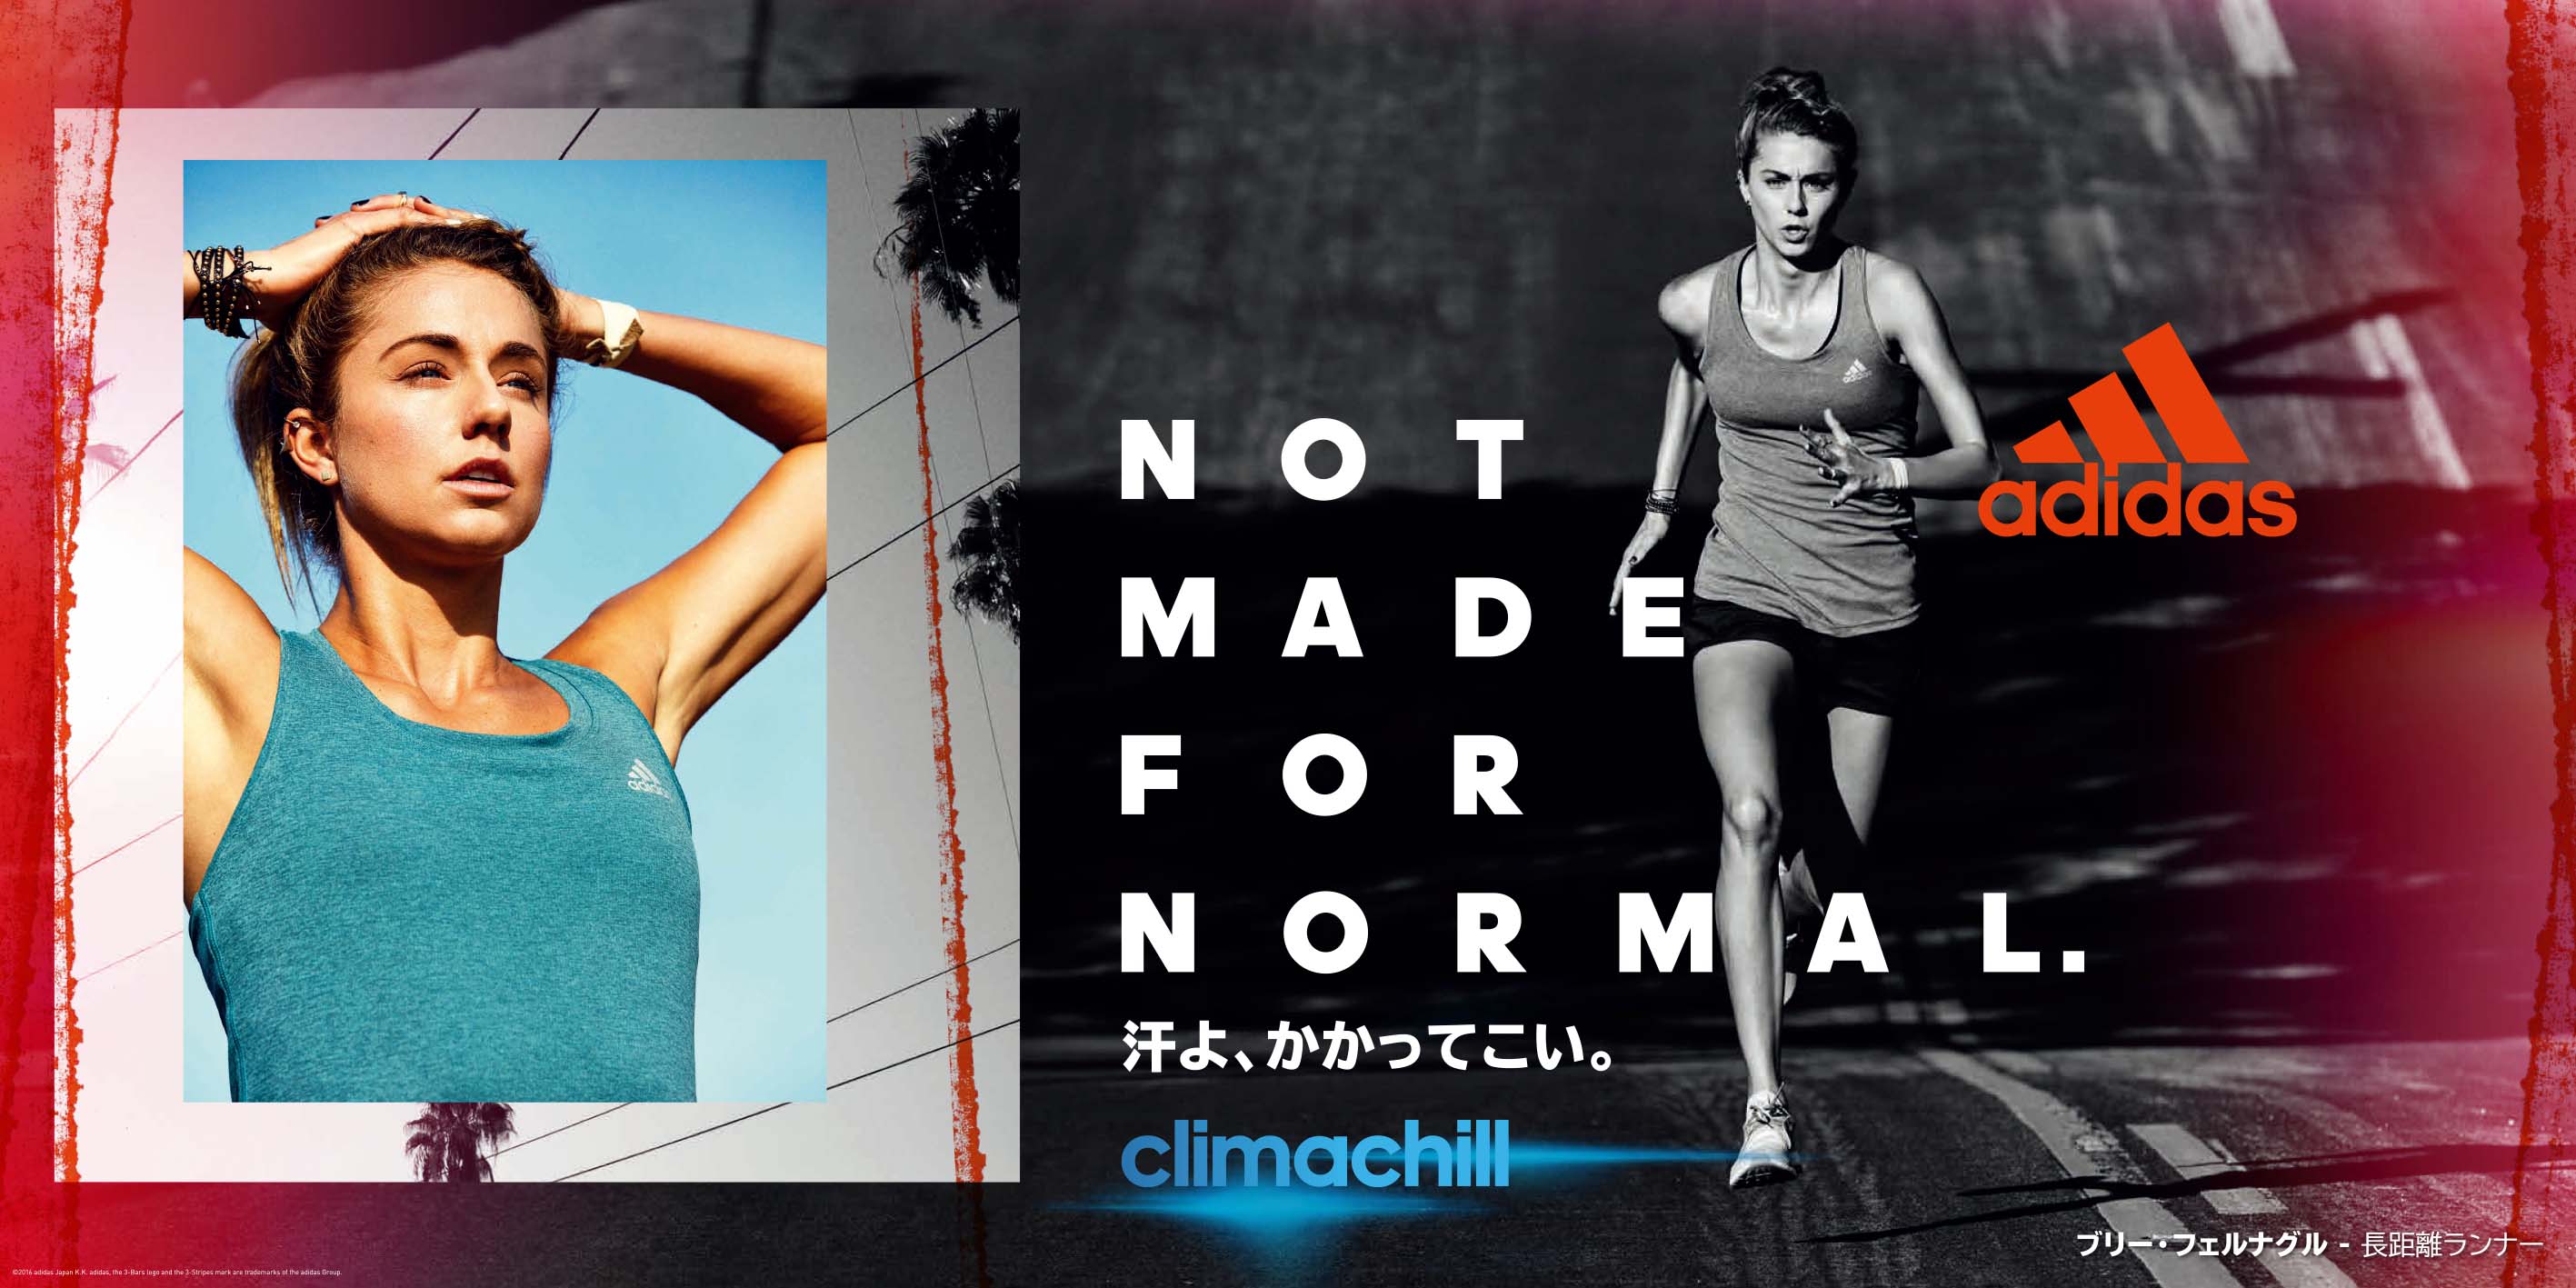 特殊糸を採用し 夏のスポーツシーンもさらっと涼しい着心地を実現adidas Climachillクライマチル 販売開始 アディダス ジャパン株式会社のプレスリリース